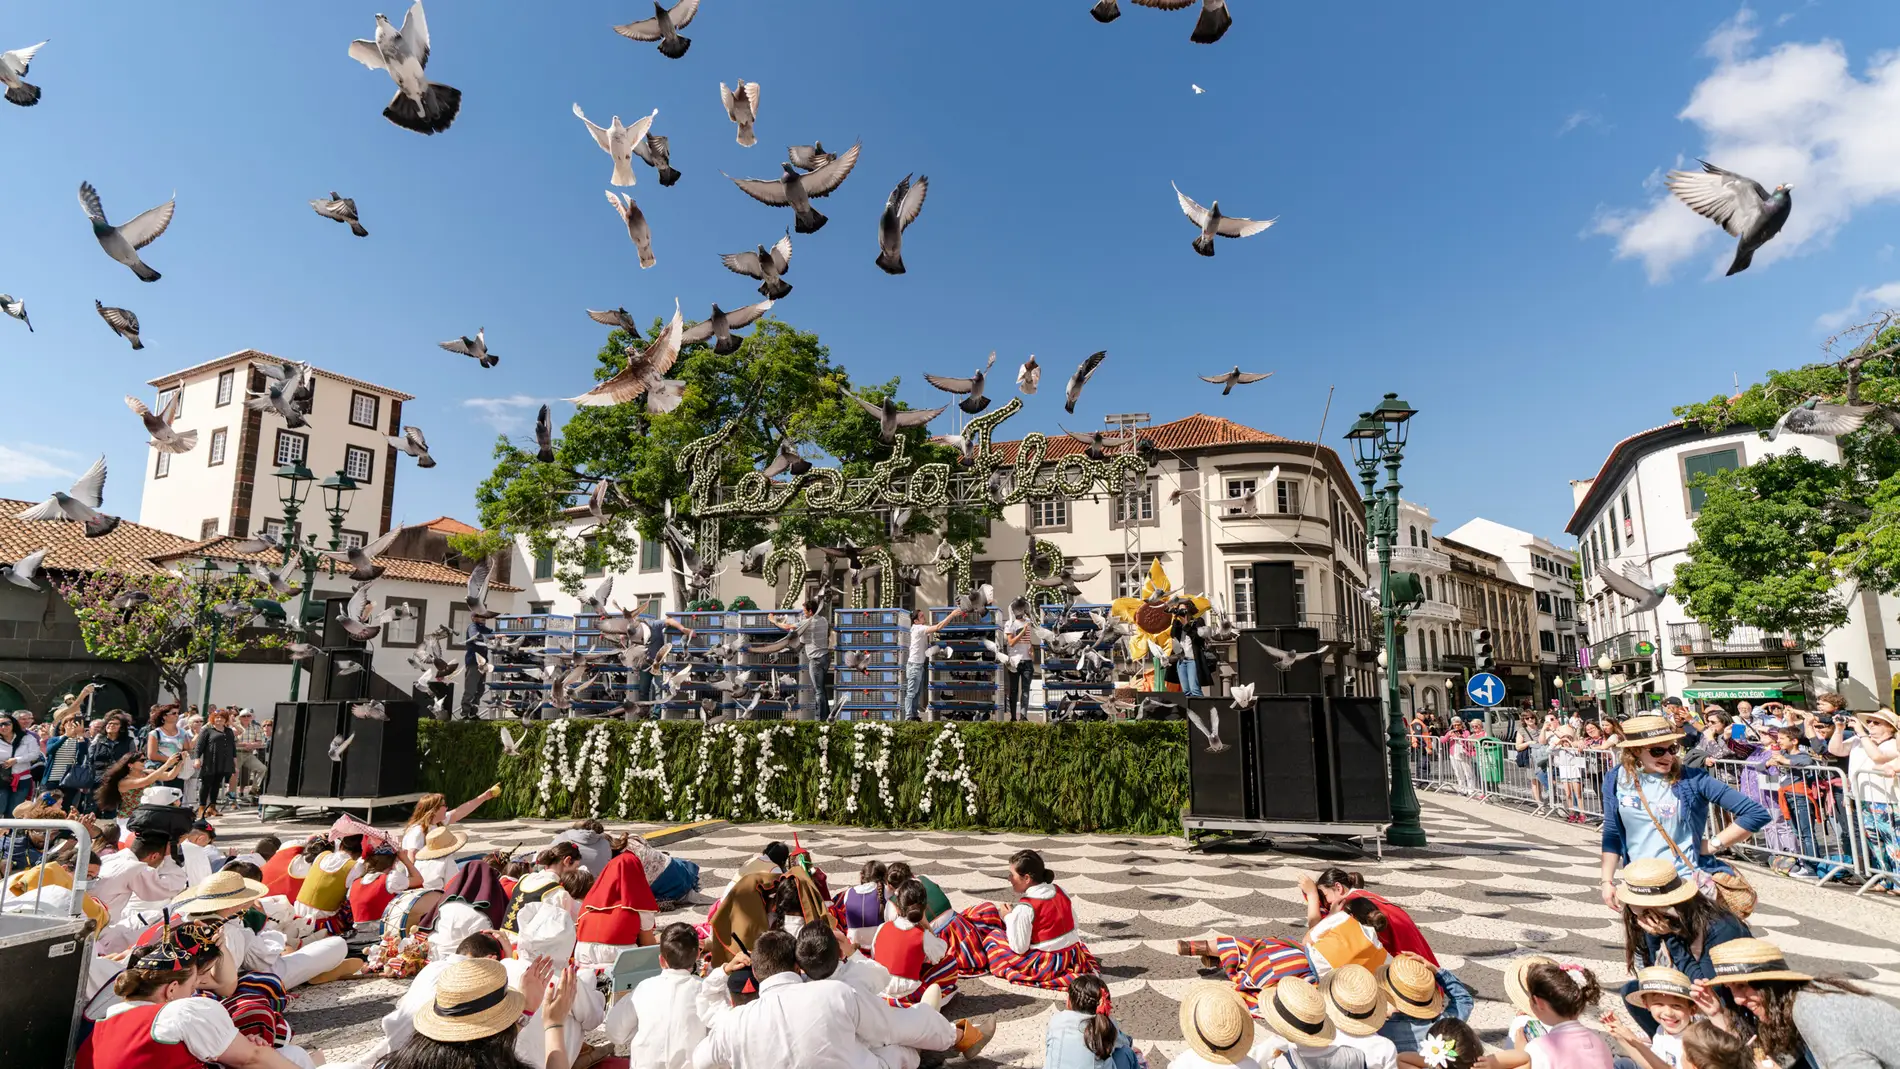 El Festival de la Flor de 2023 se celebra en Madeira del 27 de abril al 21 de mayo